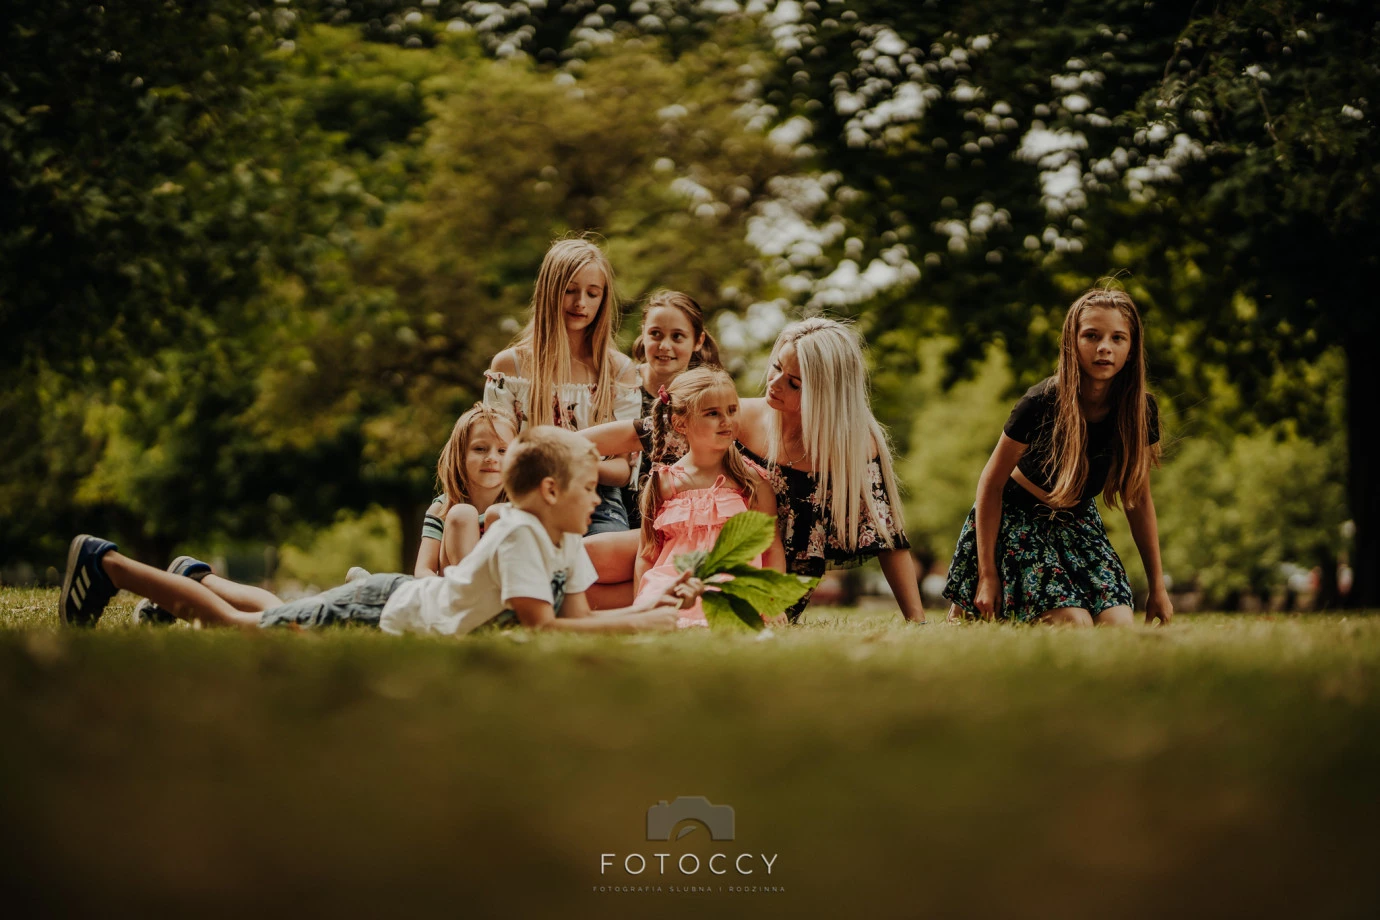 fotograf suwalki fotoccy portfolio zdjecia rodzinne fotografia rodzinna sesja